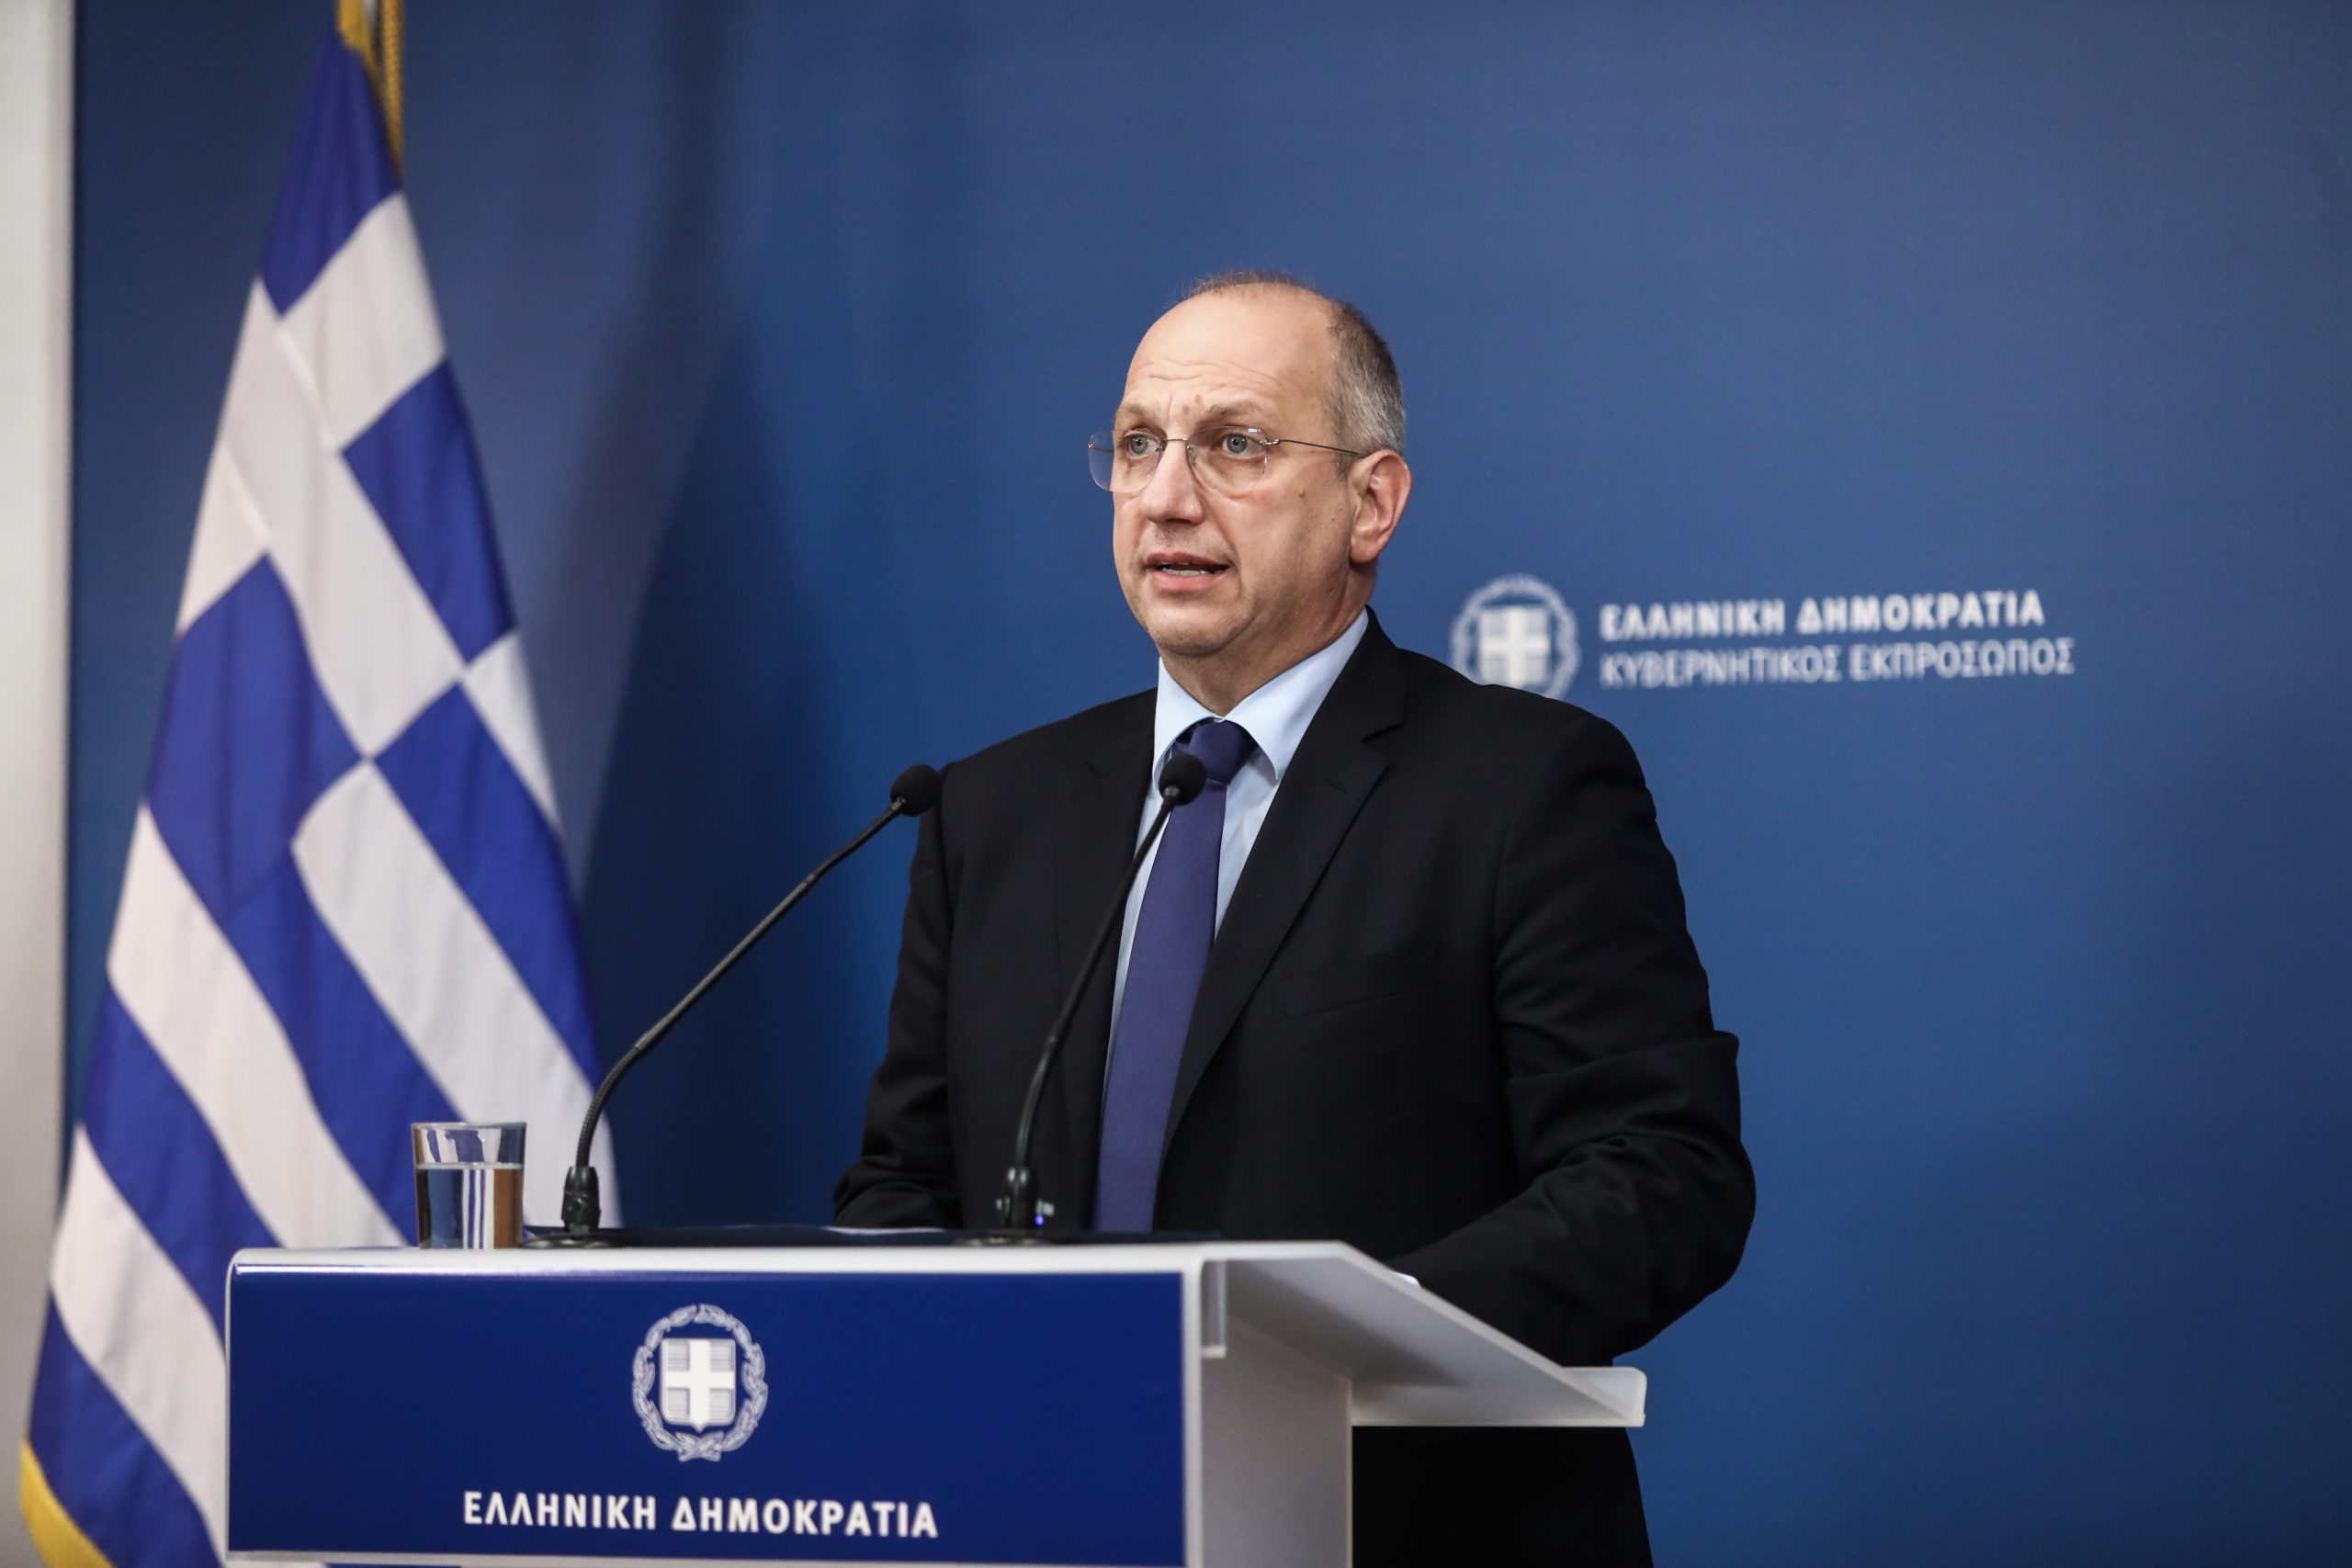 Αμήχανη η κυβέρνηση στην απόσυρση της ΚΟ του ΣΥΡΙΖΑ από την Βουλή: «Ο Α.Τσίπρας έχει γίνει επικίνδυνος» λέει ο Γ.Οικονόμου